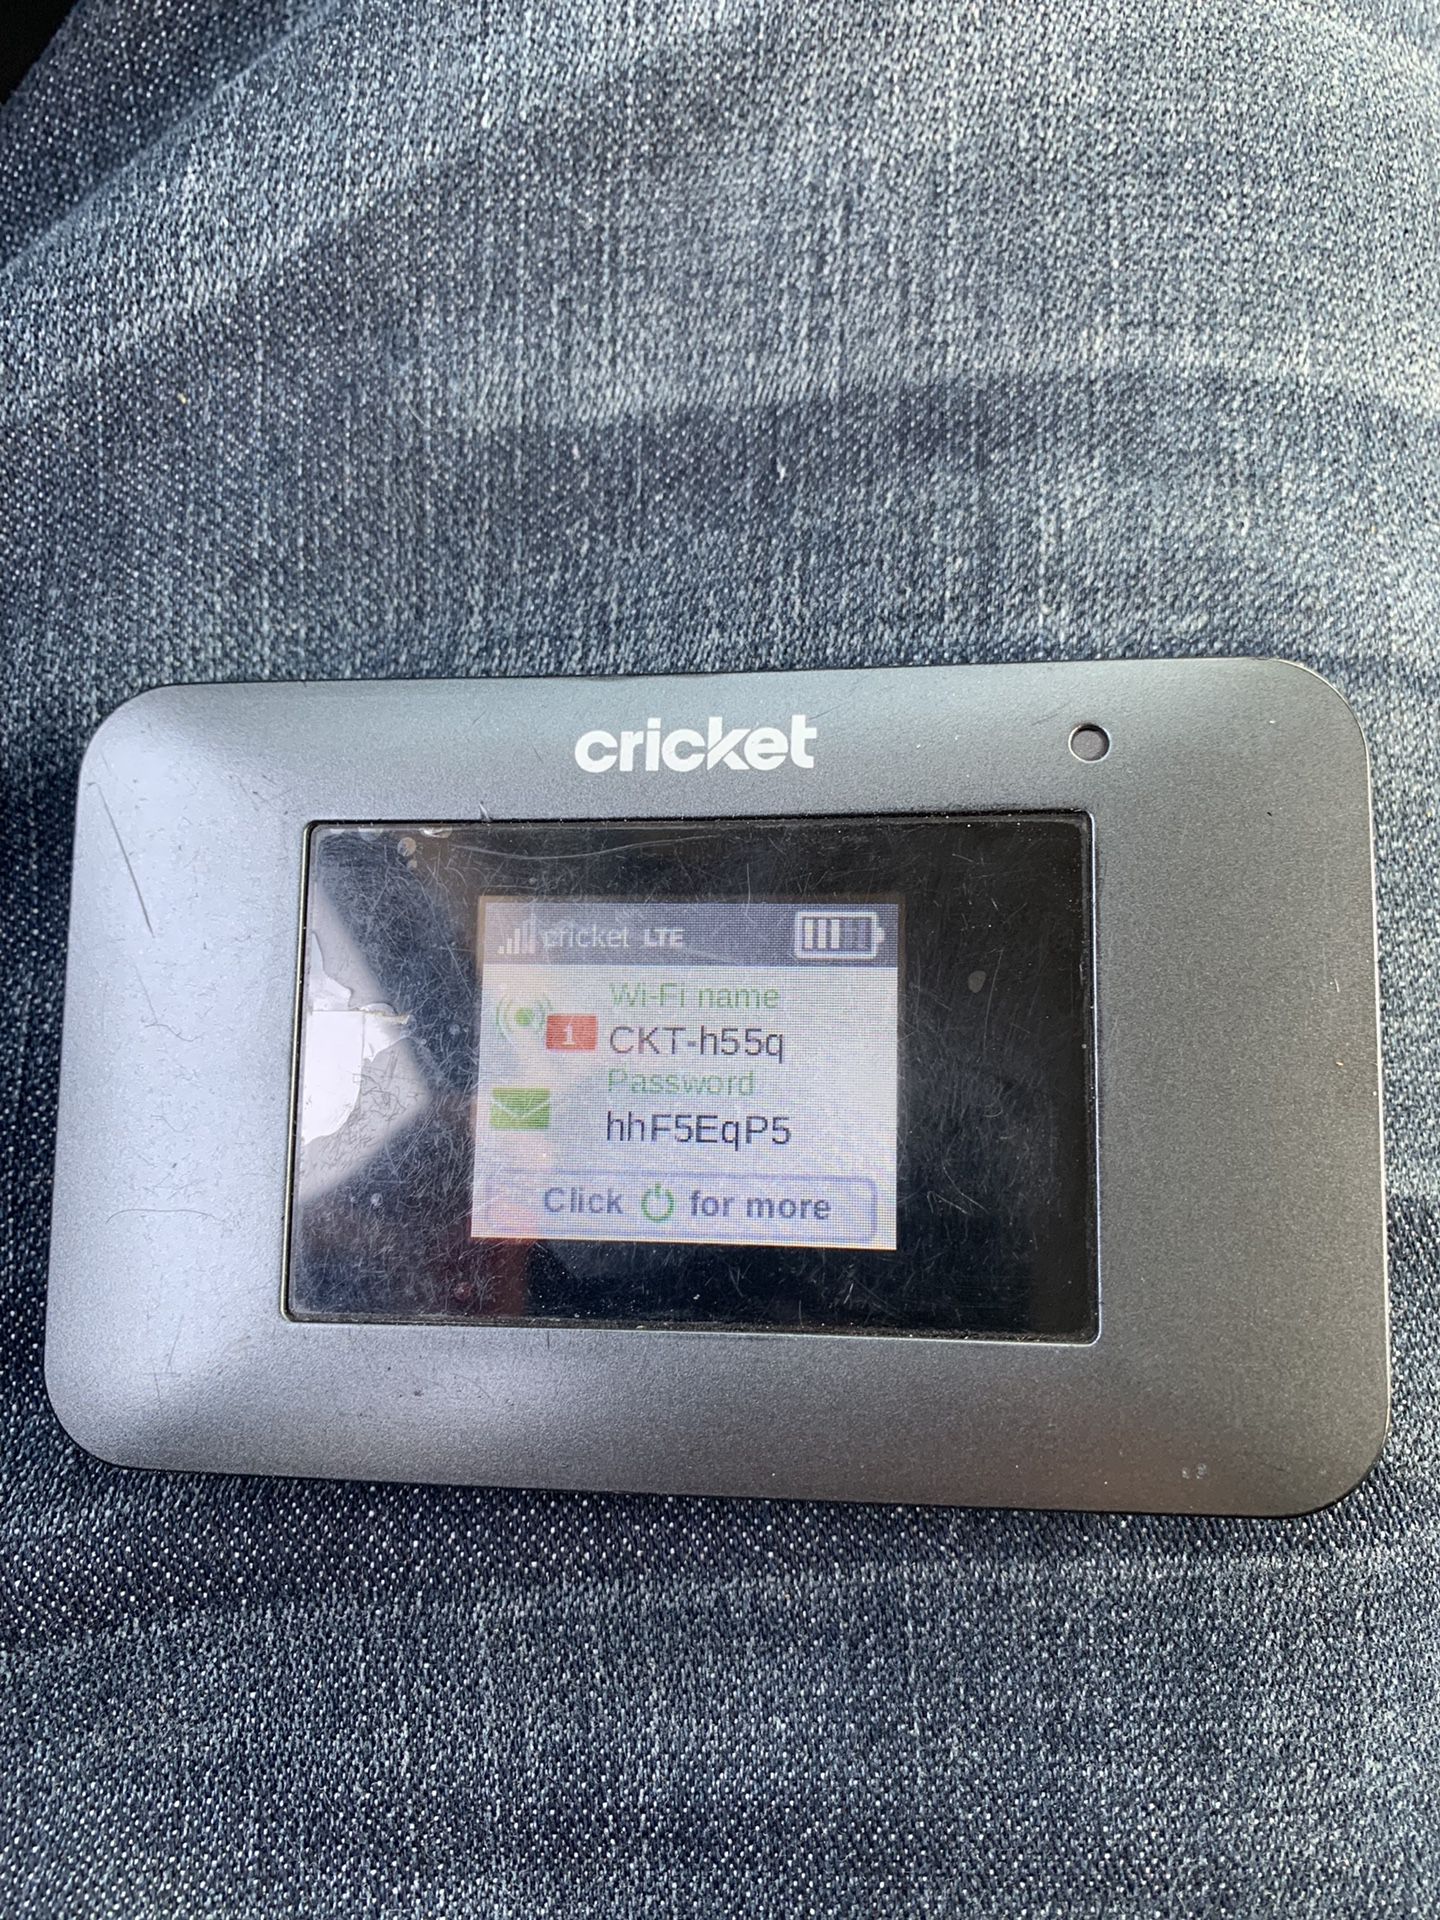 Cricket turbo hotspot device